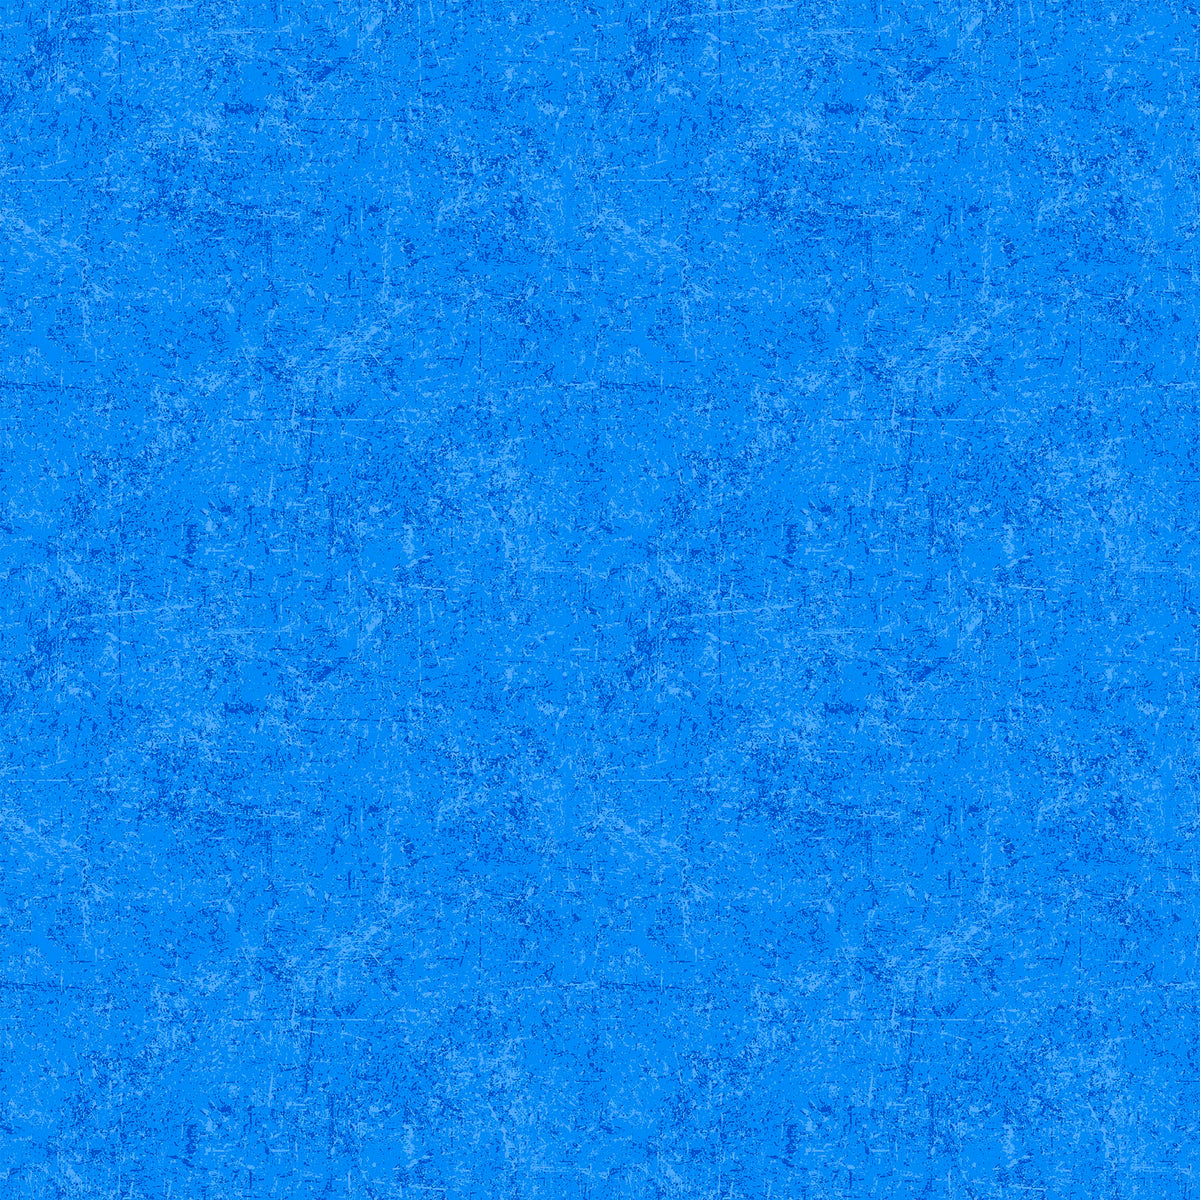 Glisten Quilt Fabric - Blender in Cornflower Blue - P10091-42